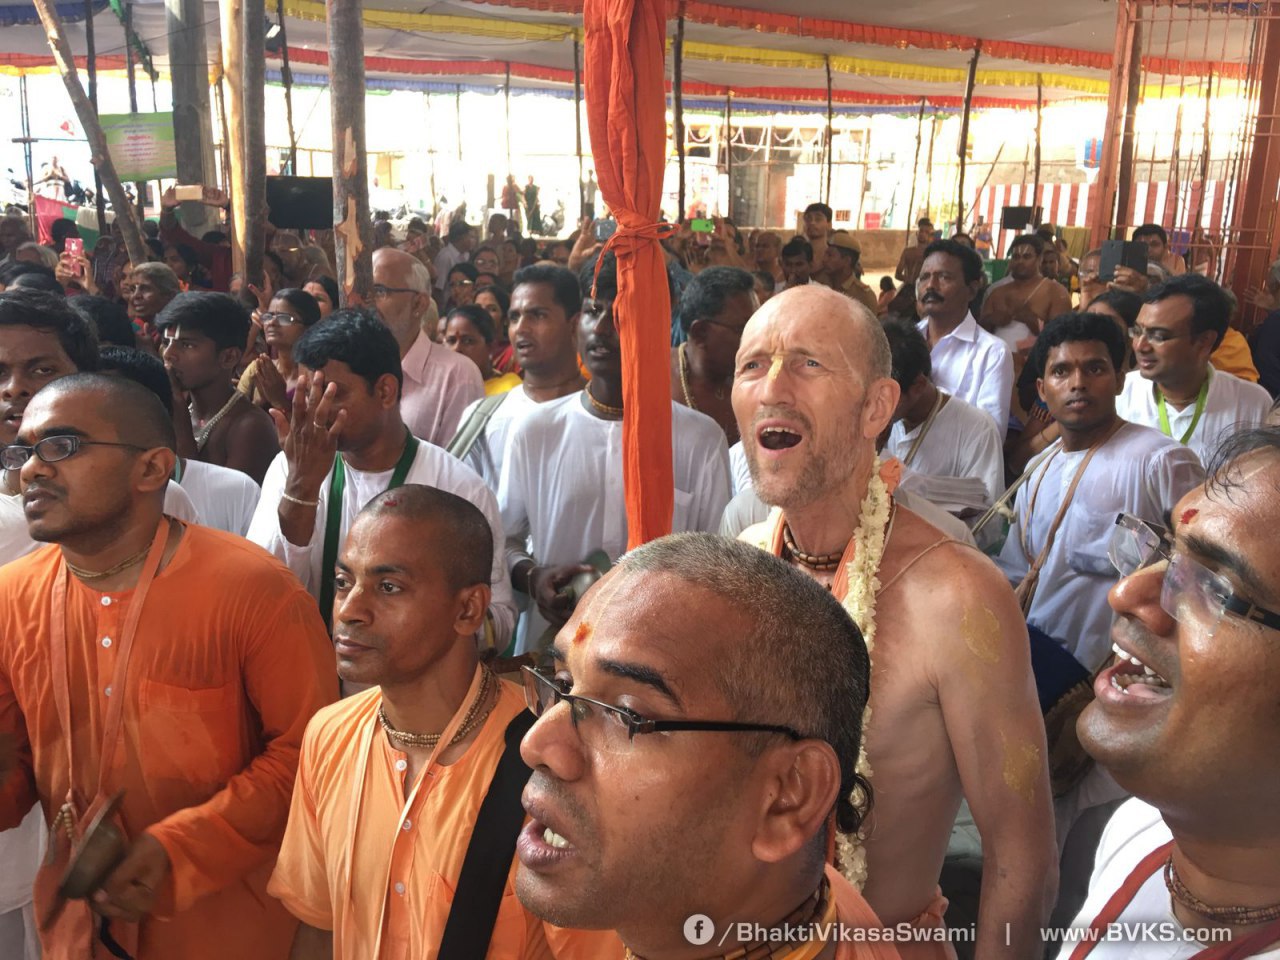 Кришнаиты поют мантру Харе Кришна на праздновании 1000-летия великого святого Рамануджачарьи в городе Шриперумбудур, Индия